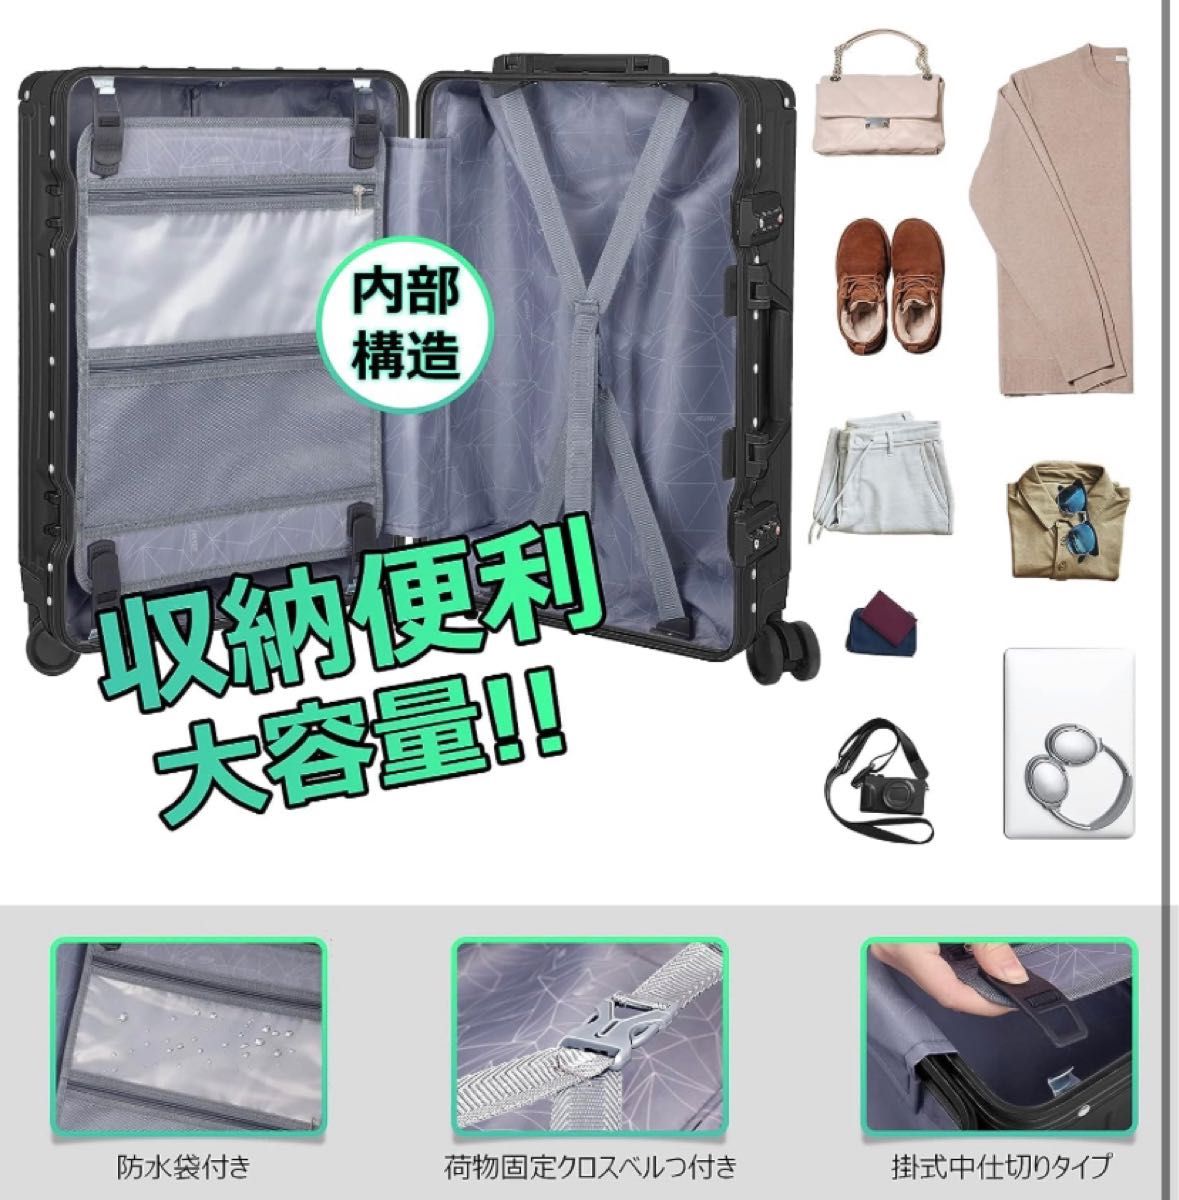 〜訳あり〜新品未使用 スーツケース キャリーバッグ Sサイズ 超軽量 静音 ダブルキャスター